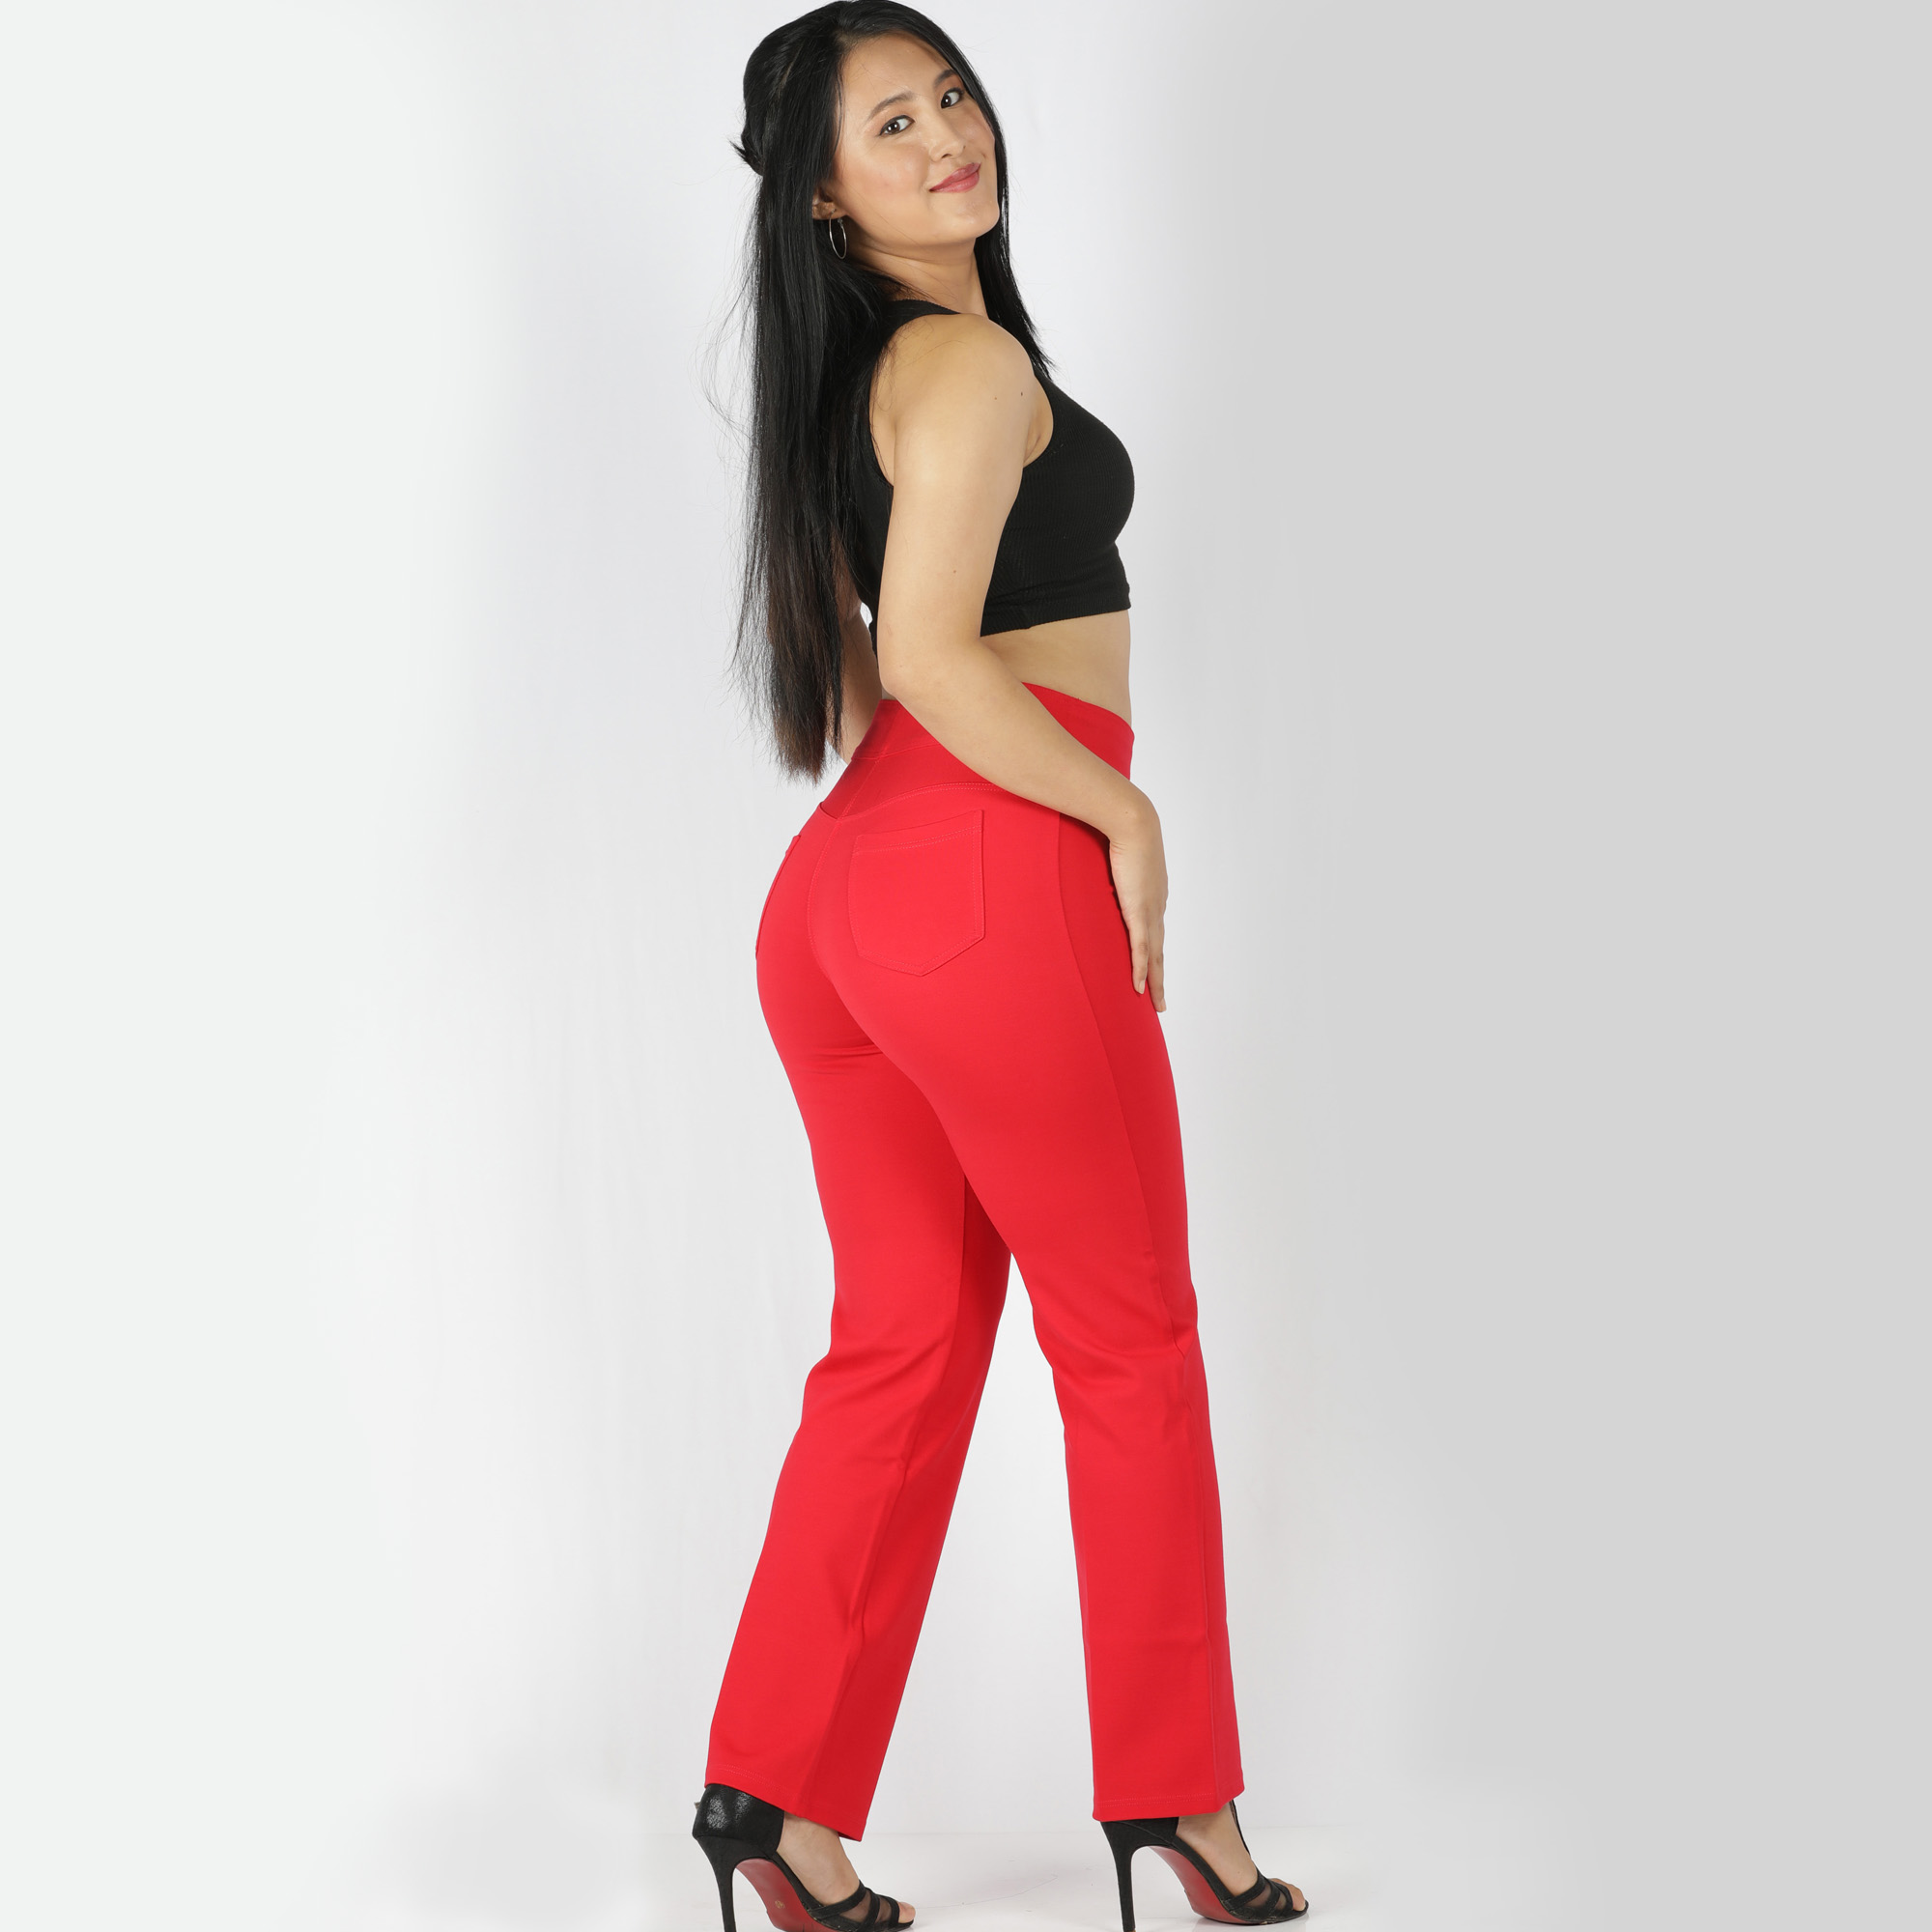 Red pants for women - Tummy tucker straight leg - 2 back pockets